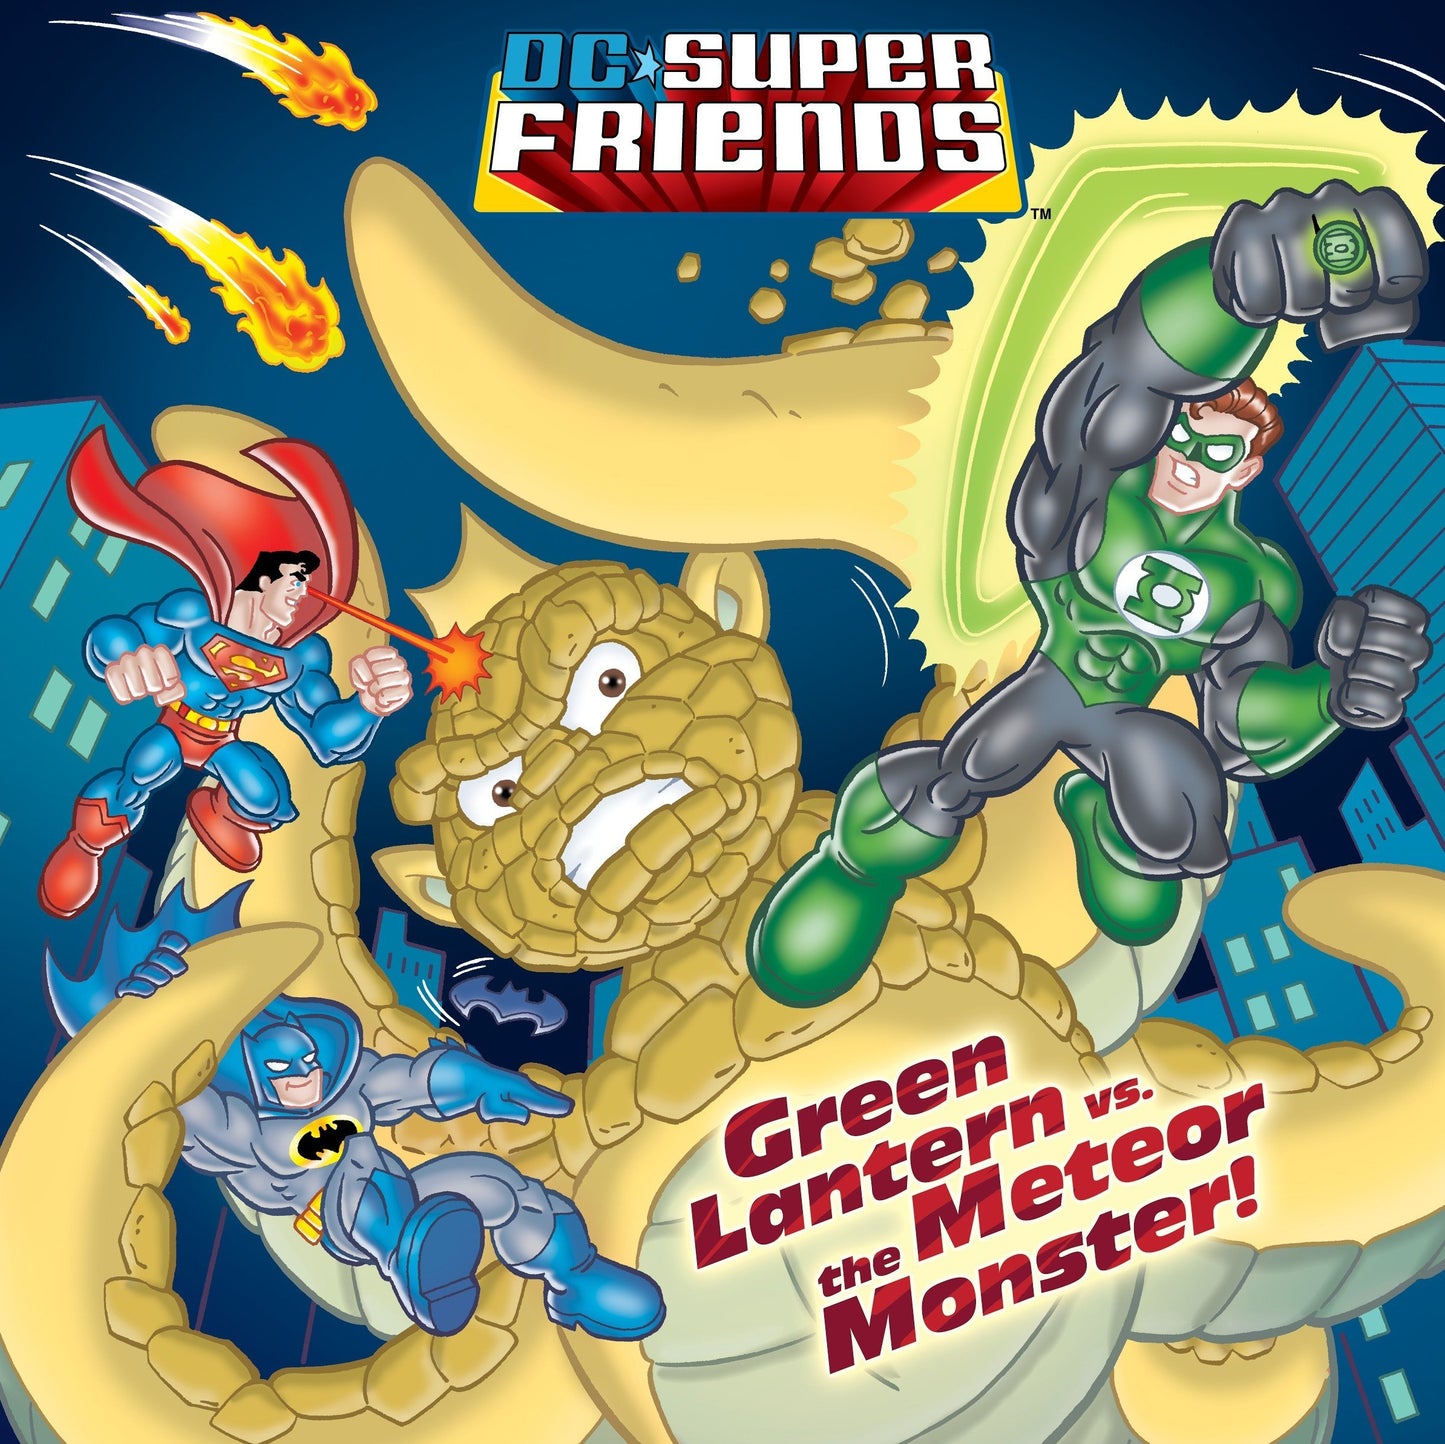 DC Super Friends Green Lantern vs. the Meteor Monster